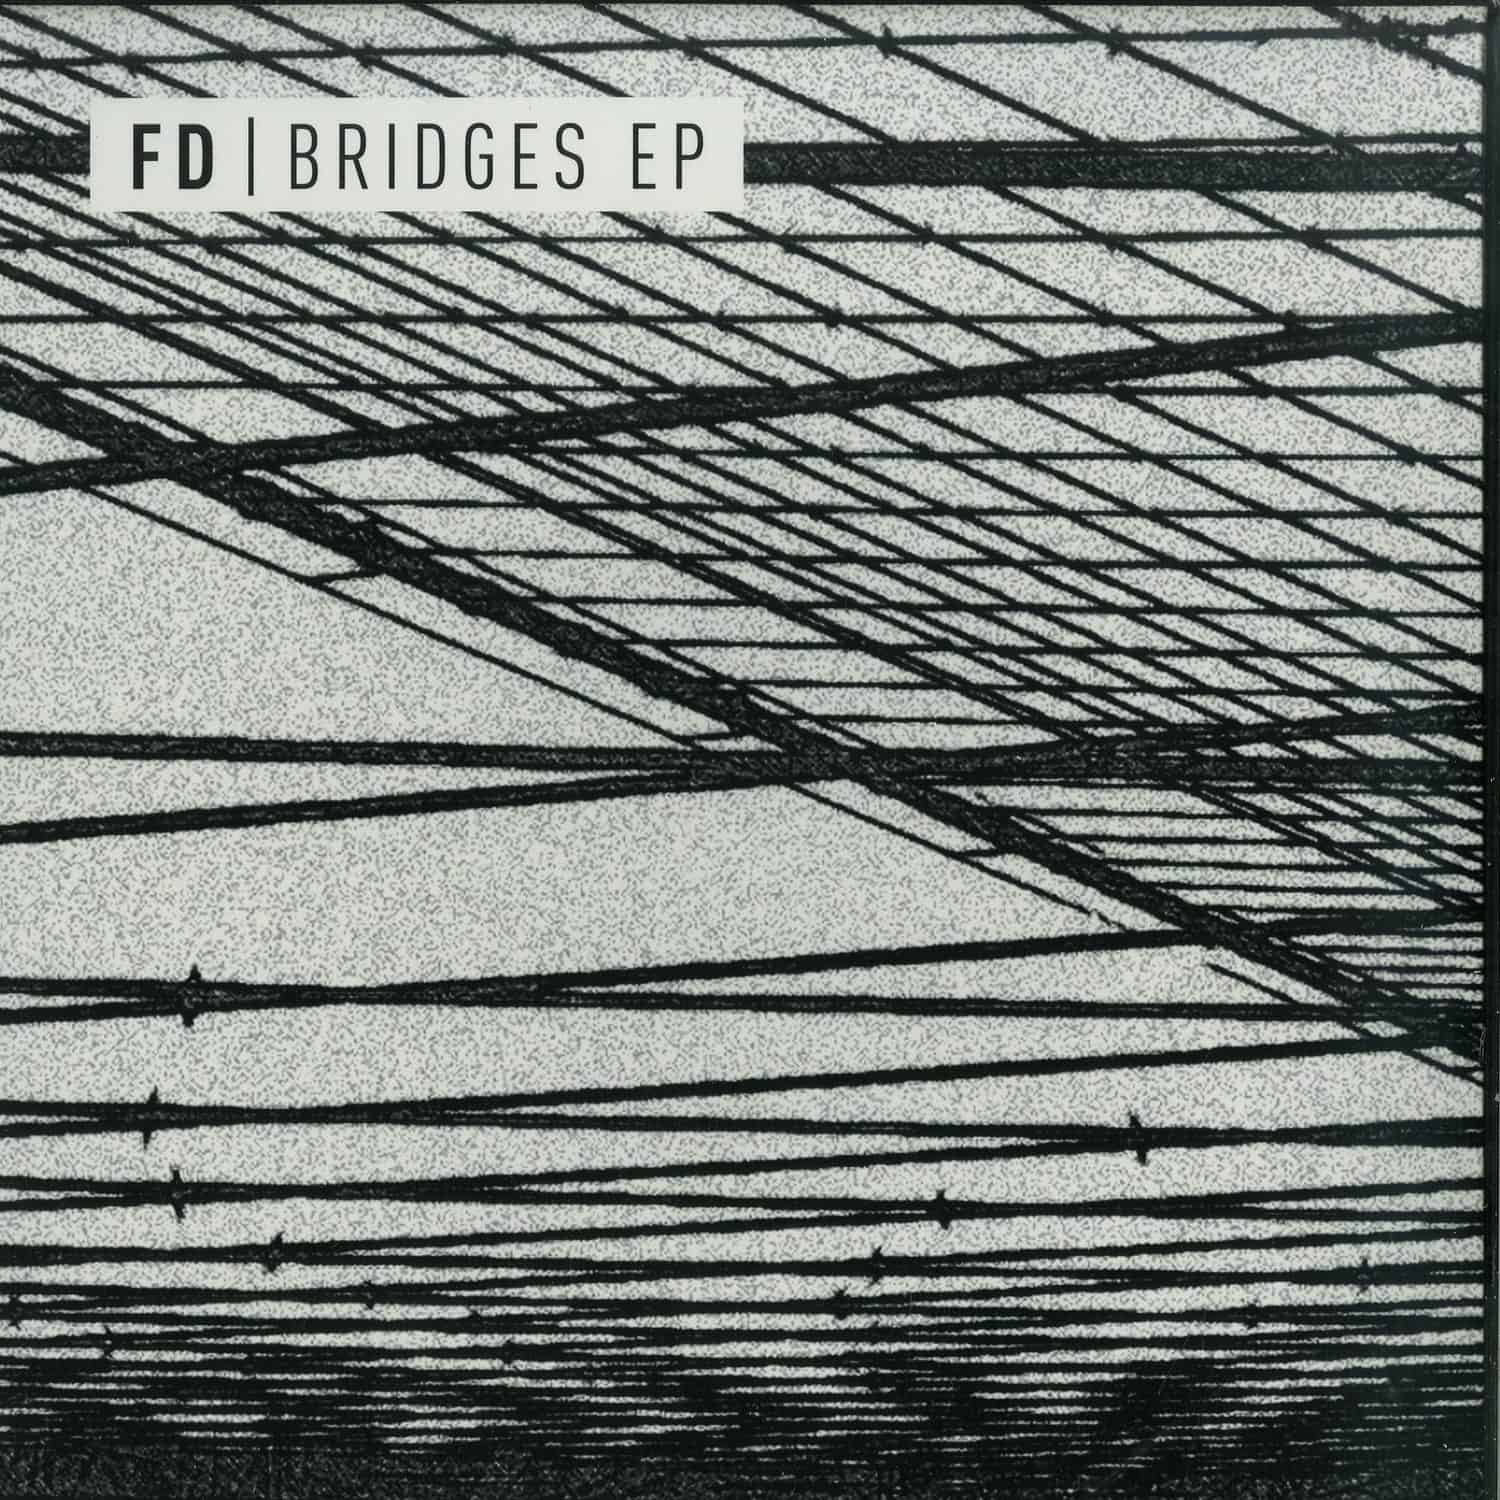 FD - BRIDGES EP